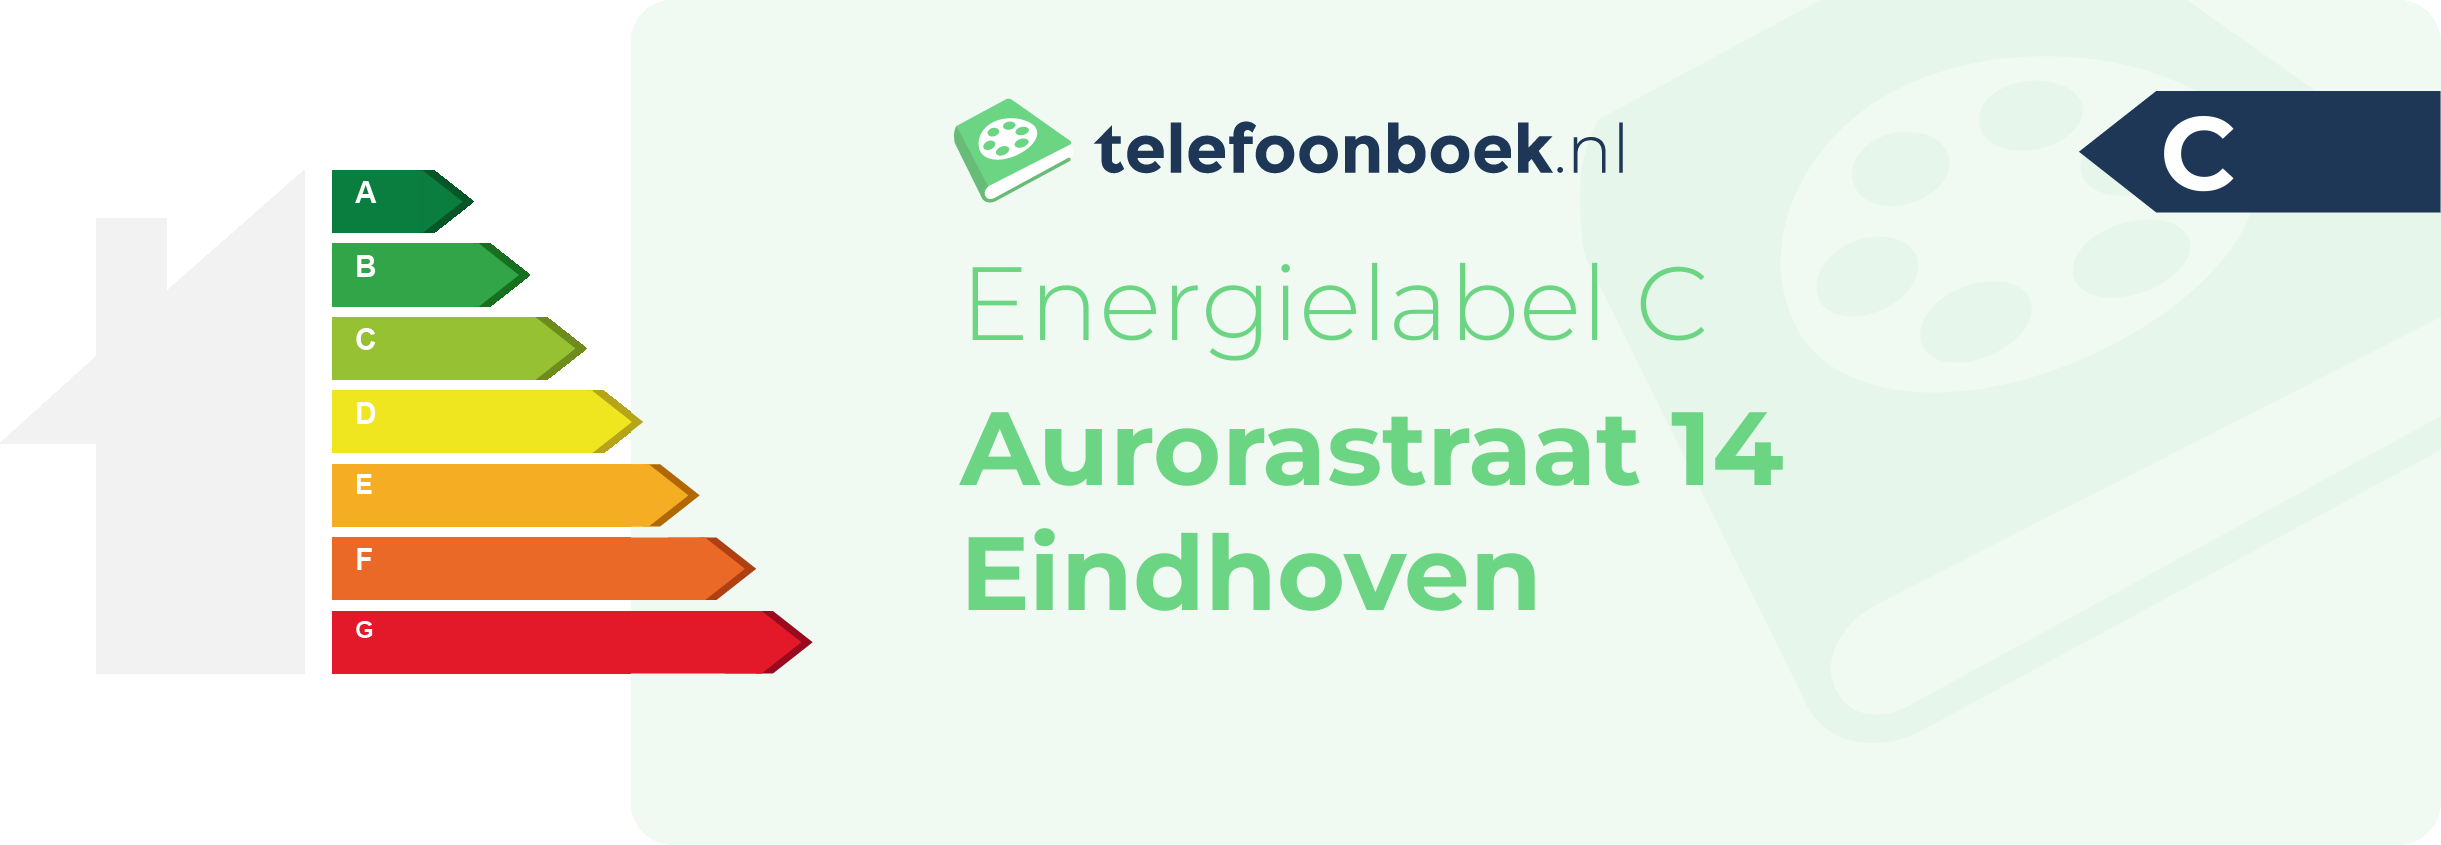 Energielabel Aurorastraat 14 Eindhoven